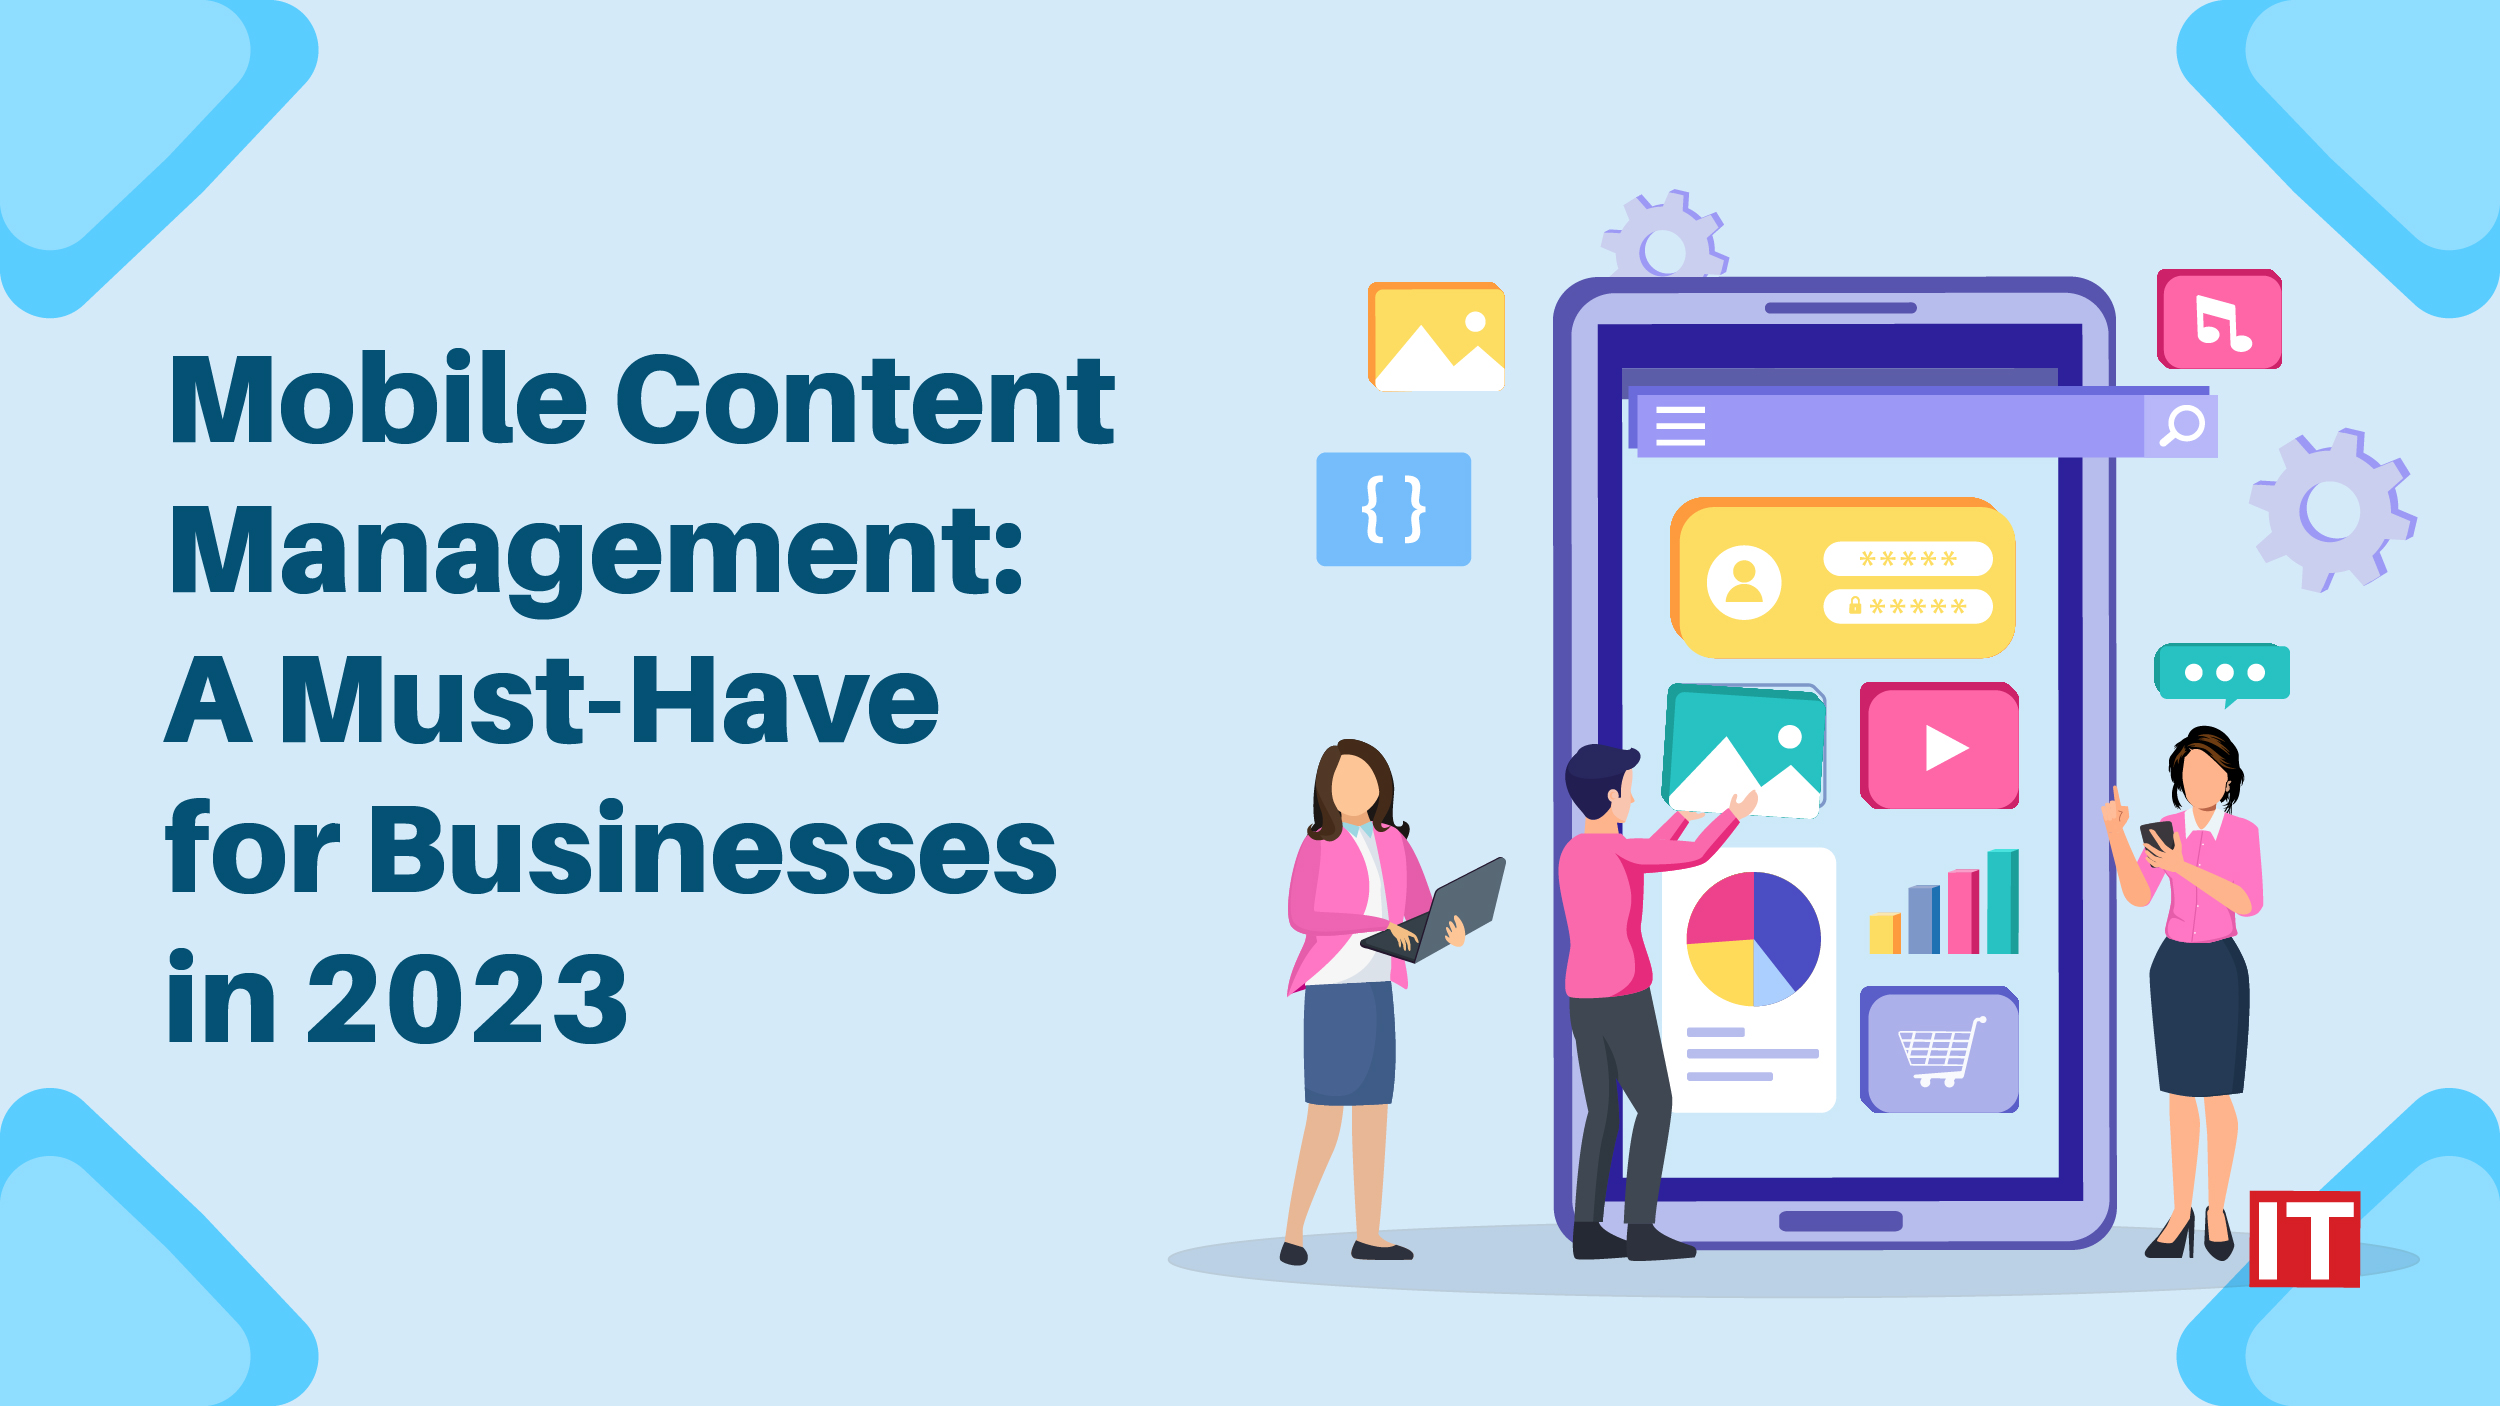 Mobile content management